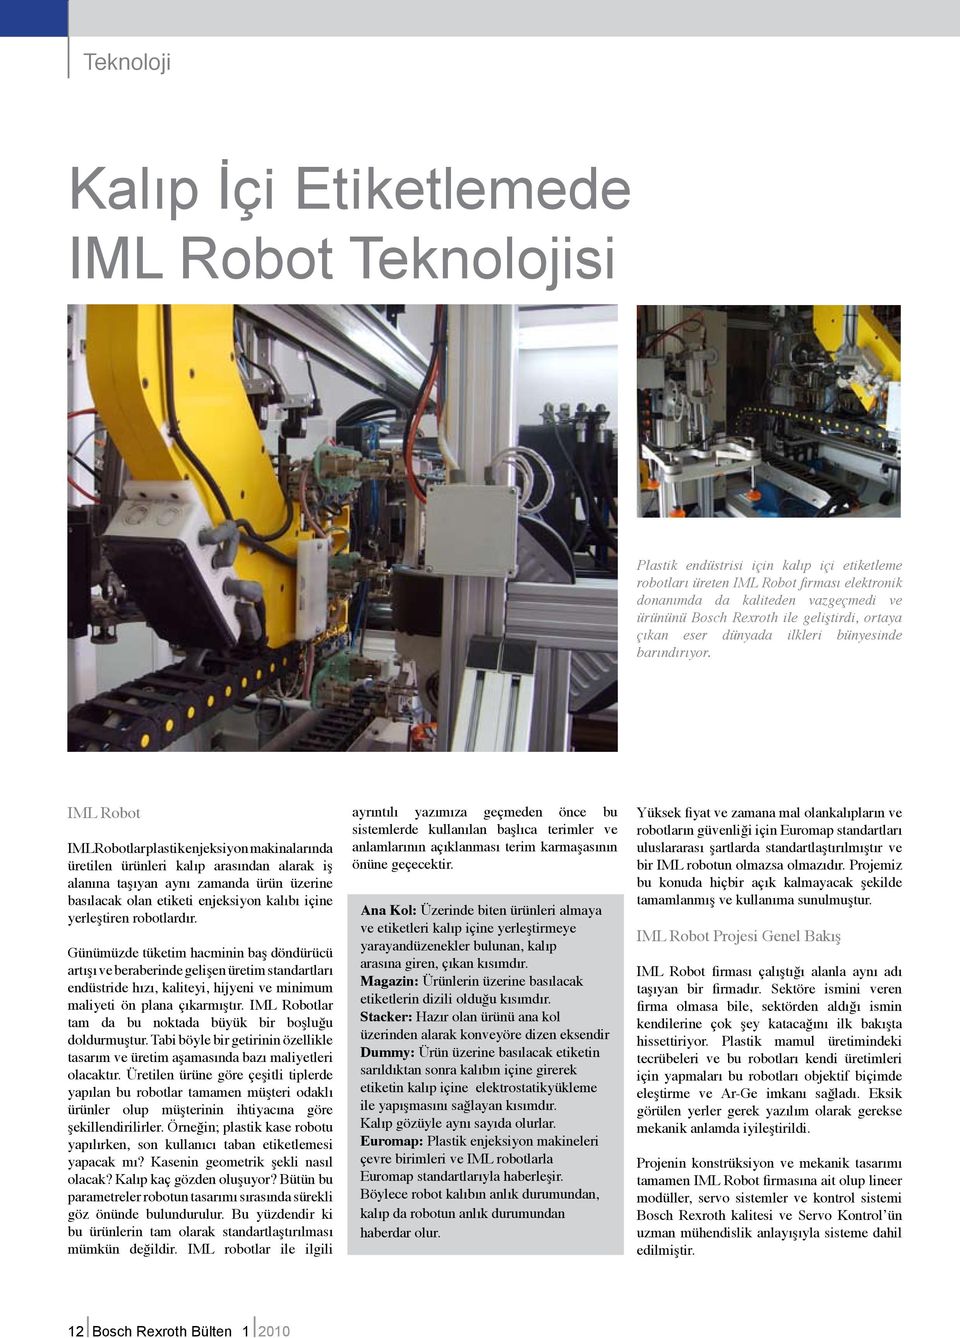 IML Robot IML Robotlar plastik enjeksiyon makinalarında üretilen ürünleri kalıp arasından alarak iş alanına taşıyan aynı zamanda ürün üzerine basılacak olan etiketi enjeksiyon kalıbı içine